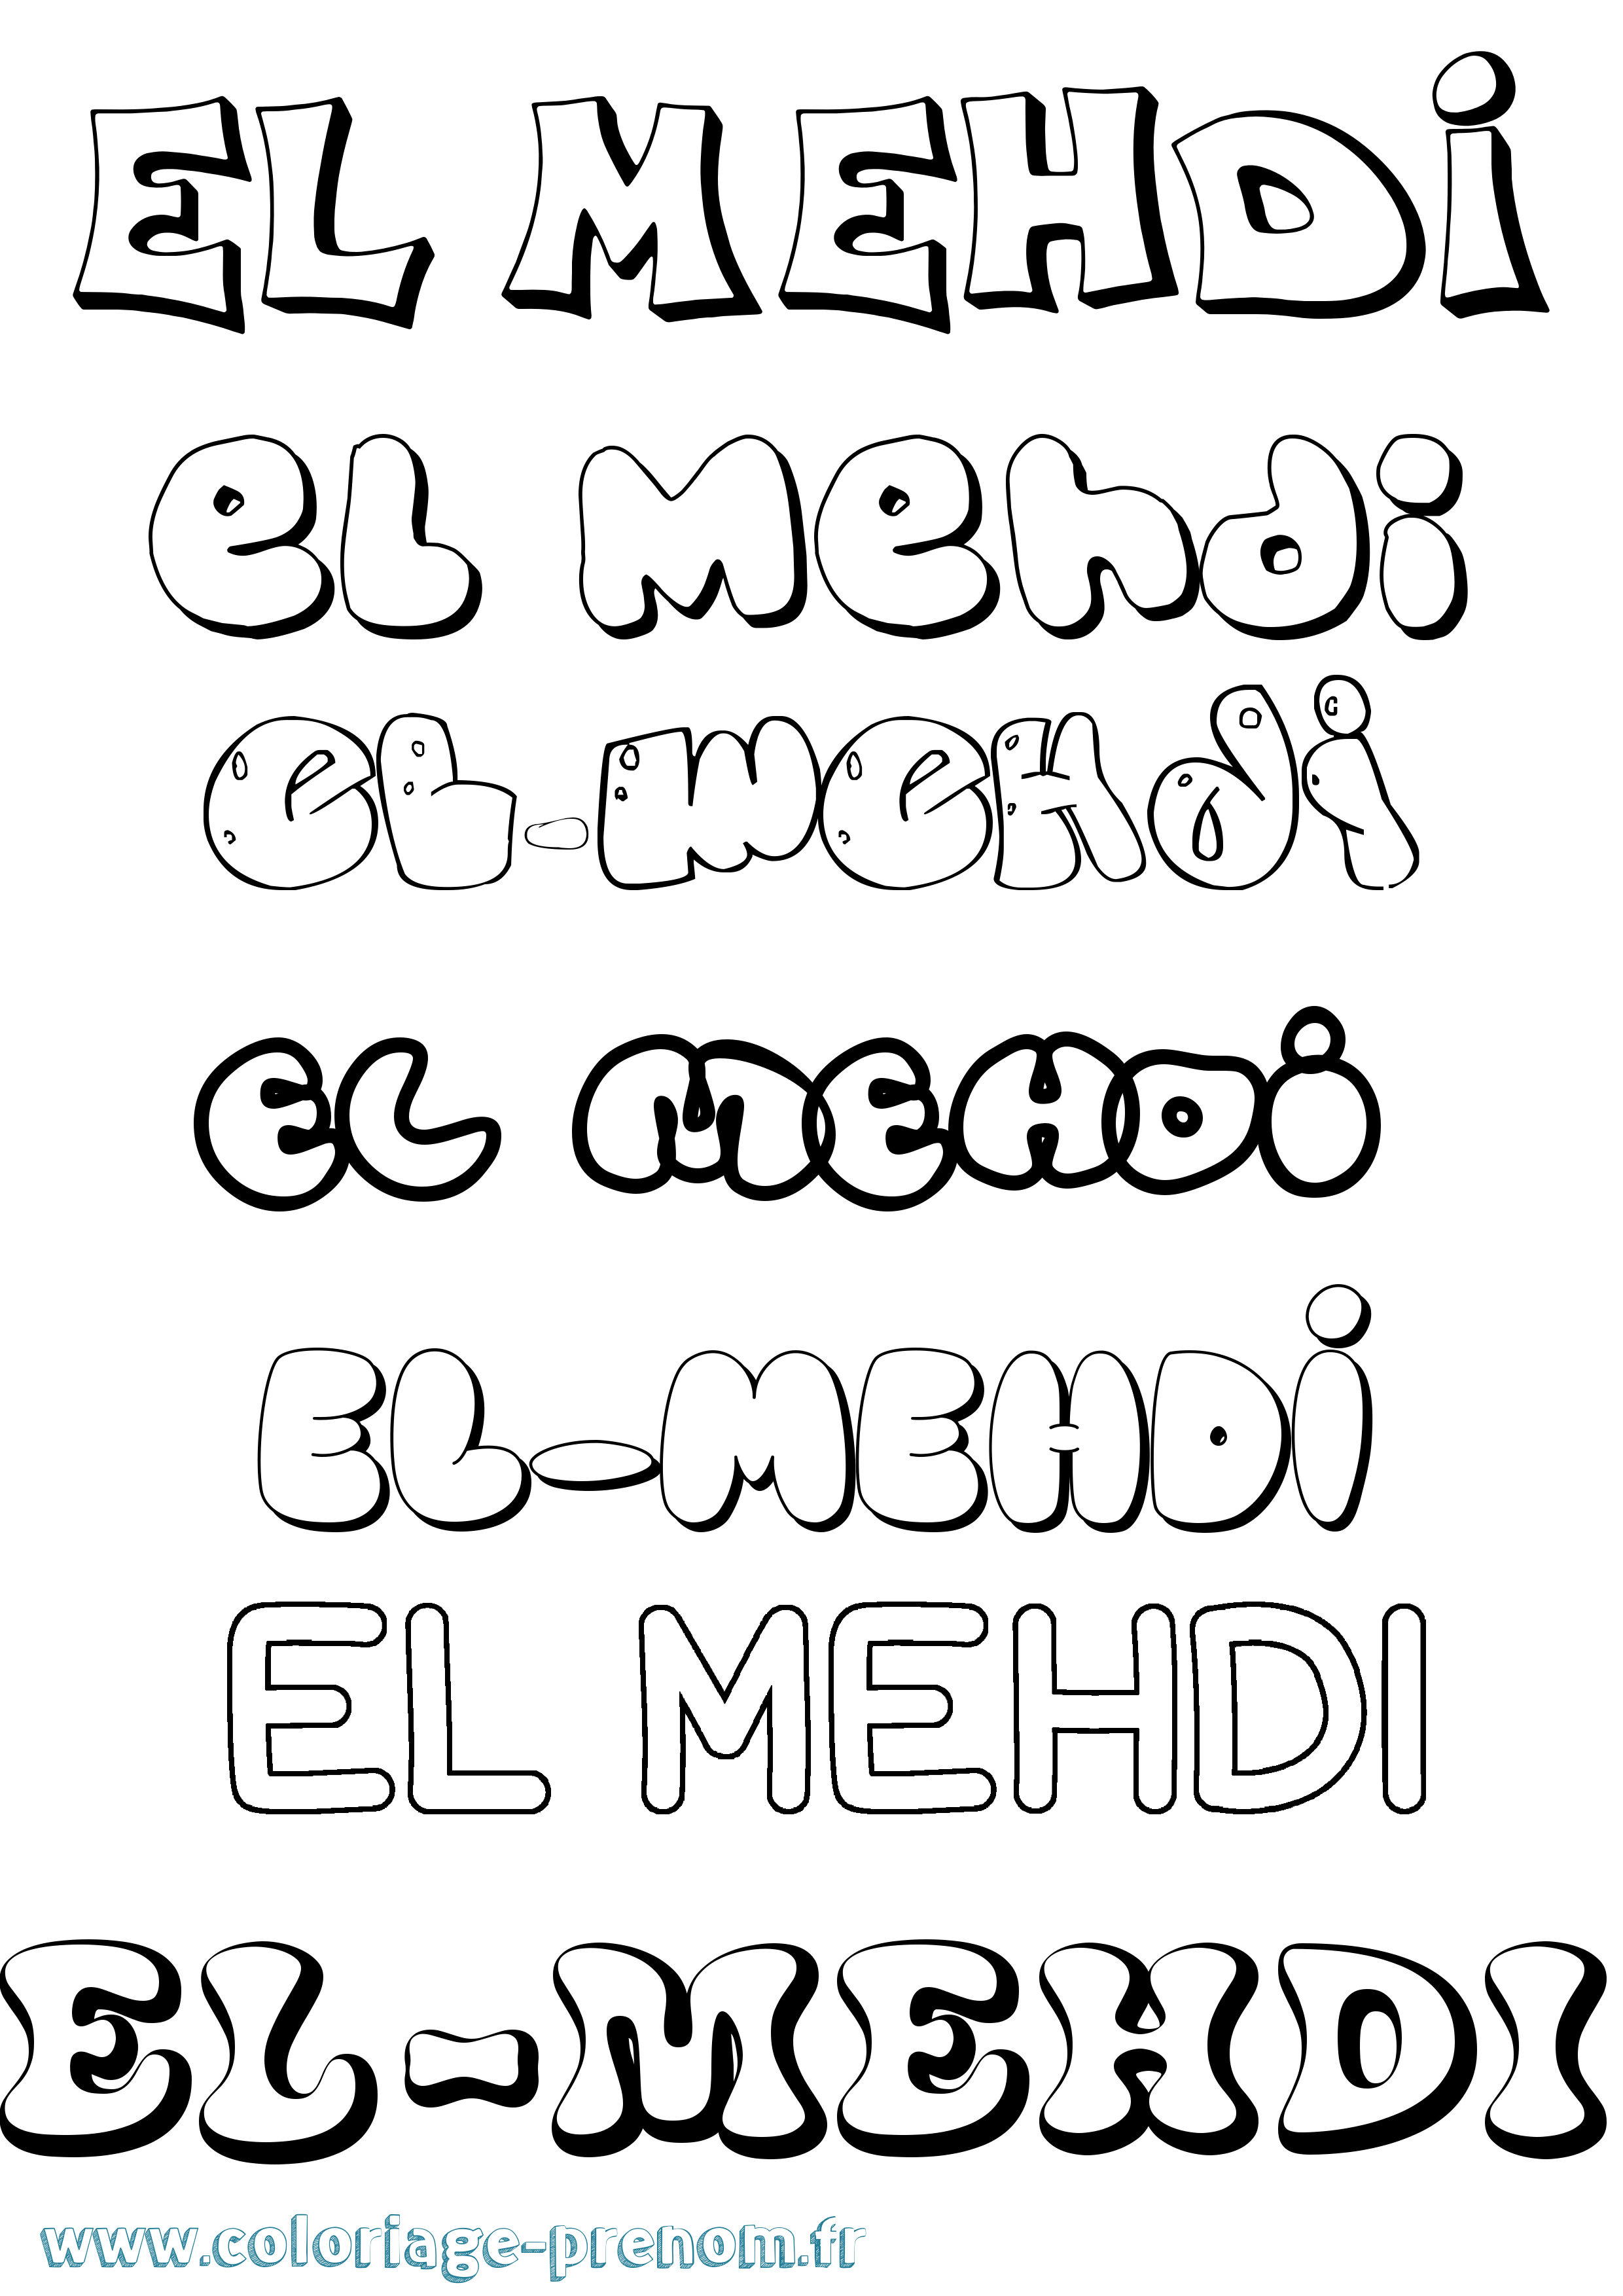 Coloriage prénom El-Mehdi Bubble